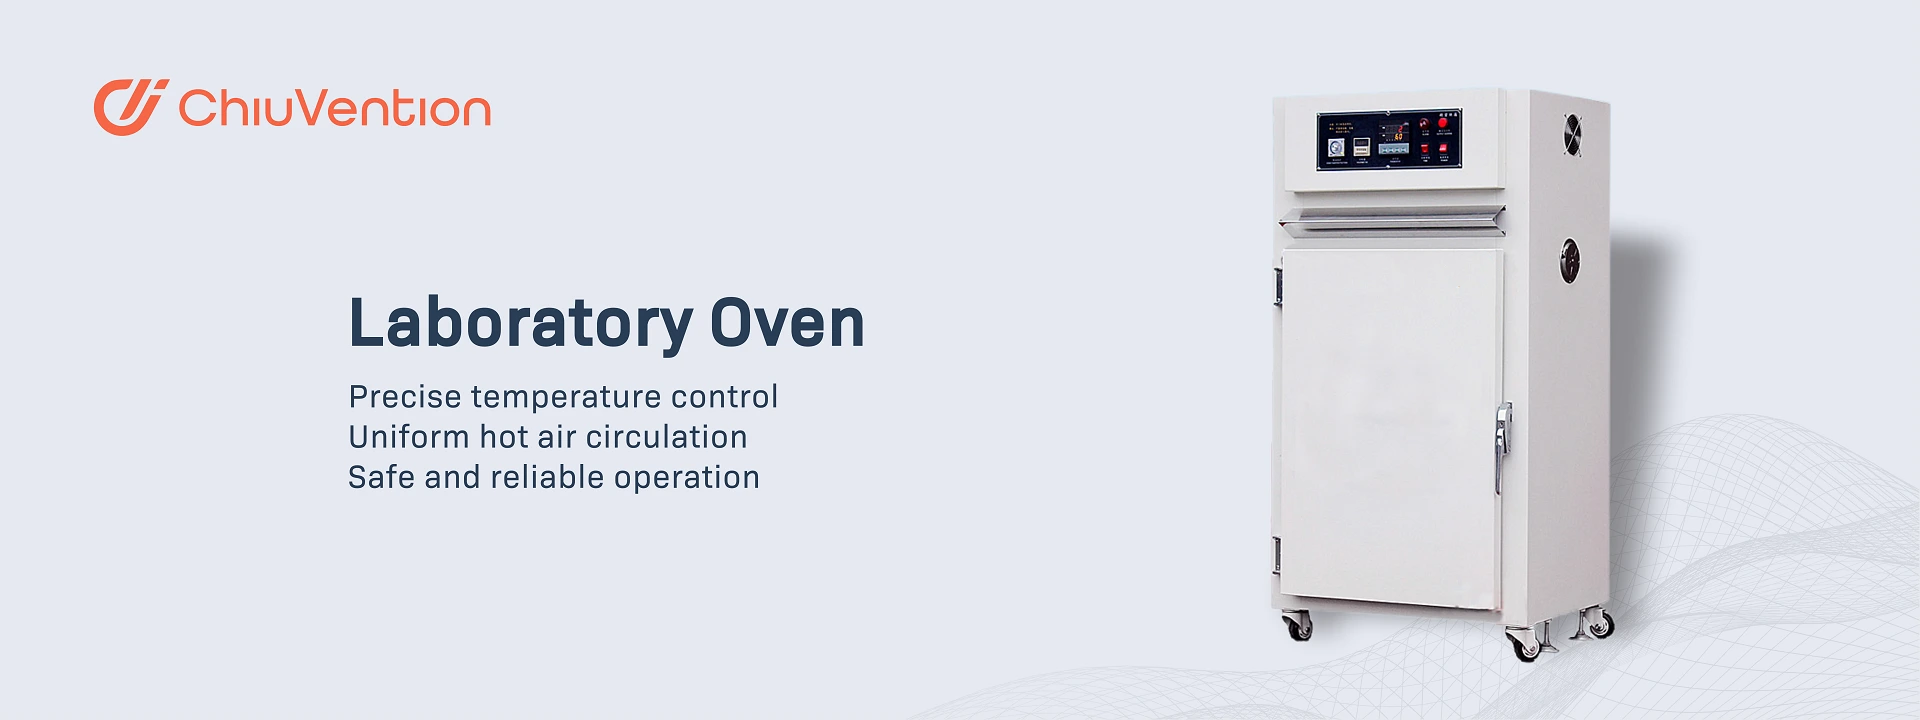 ChiuVention Laboratory Oven